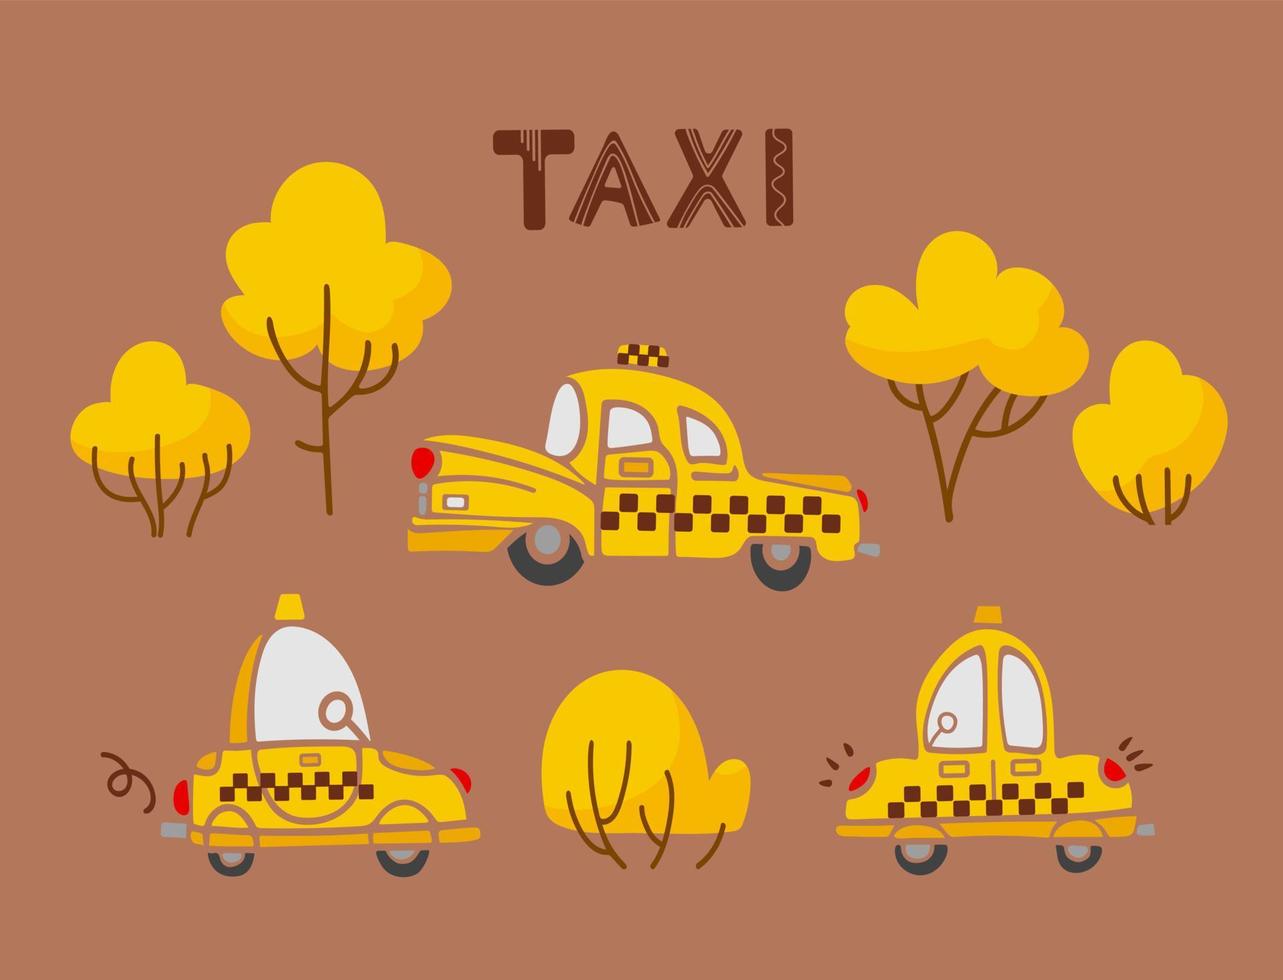 ensemble de voitures et d'arbres de taxi jaunes de dessins animés vintage mignons dans des couleurs chaudes et vibrantes. pour les garçons, pépinière, autocollants, affiches, cartes postales, éléments de conception vecteur